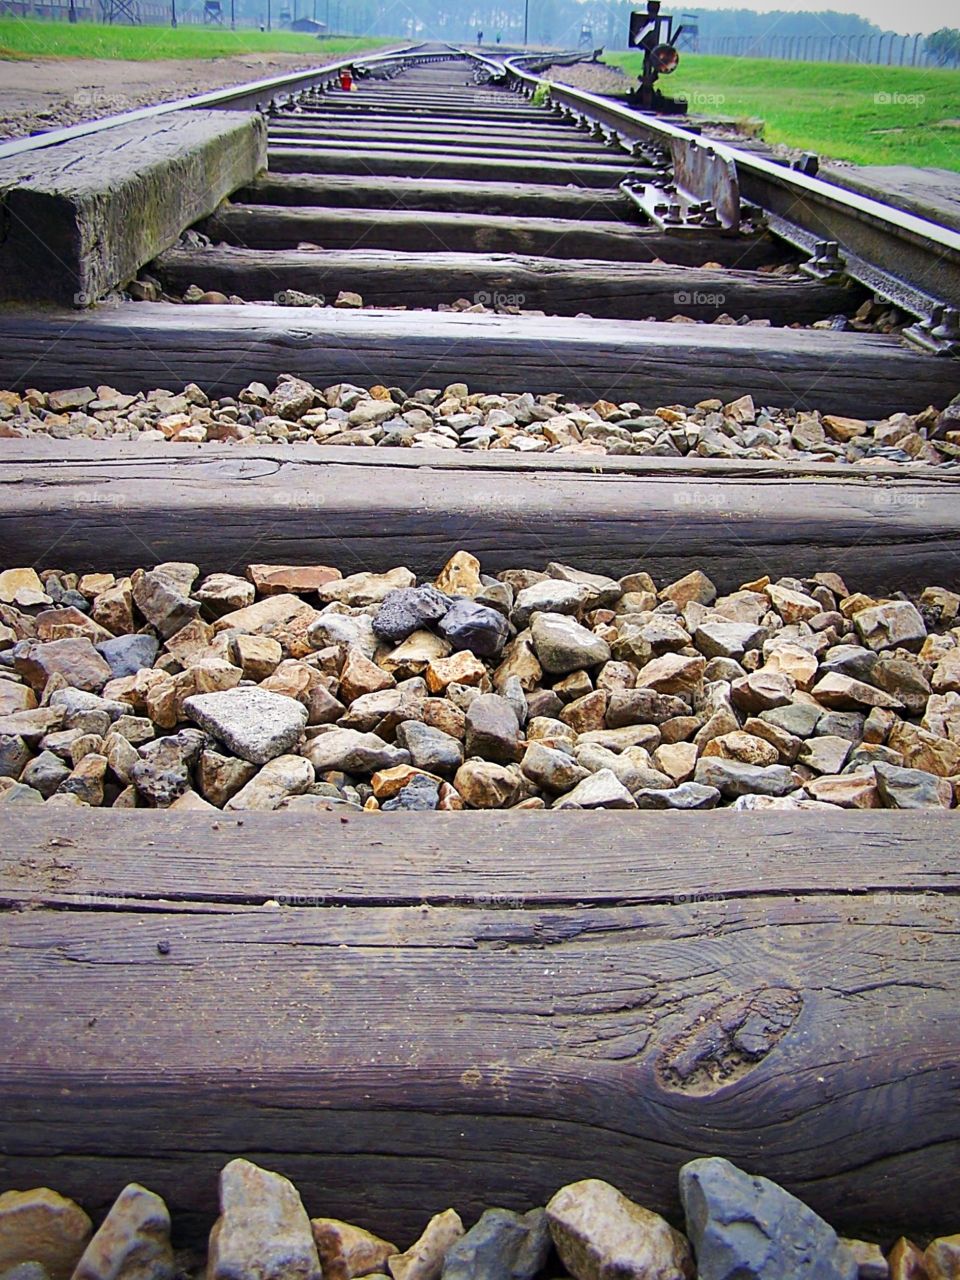 Train from “Selektion” platform in Auschwitz, Poland